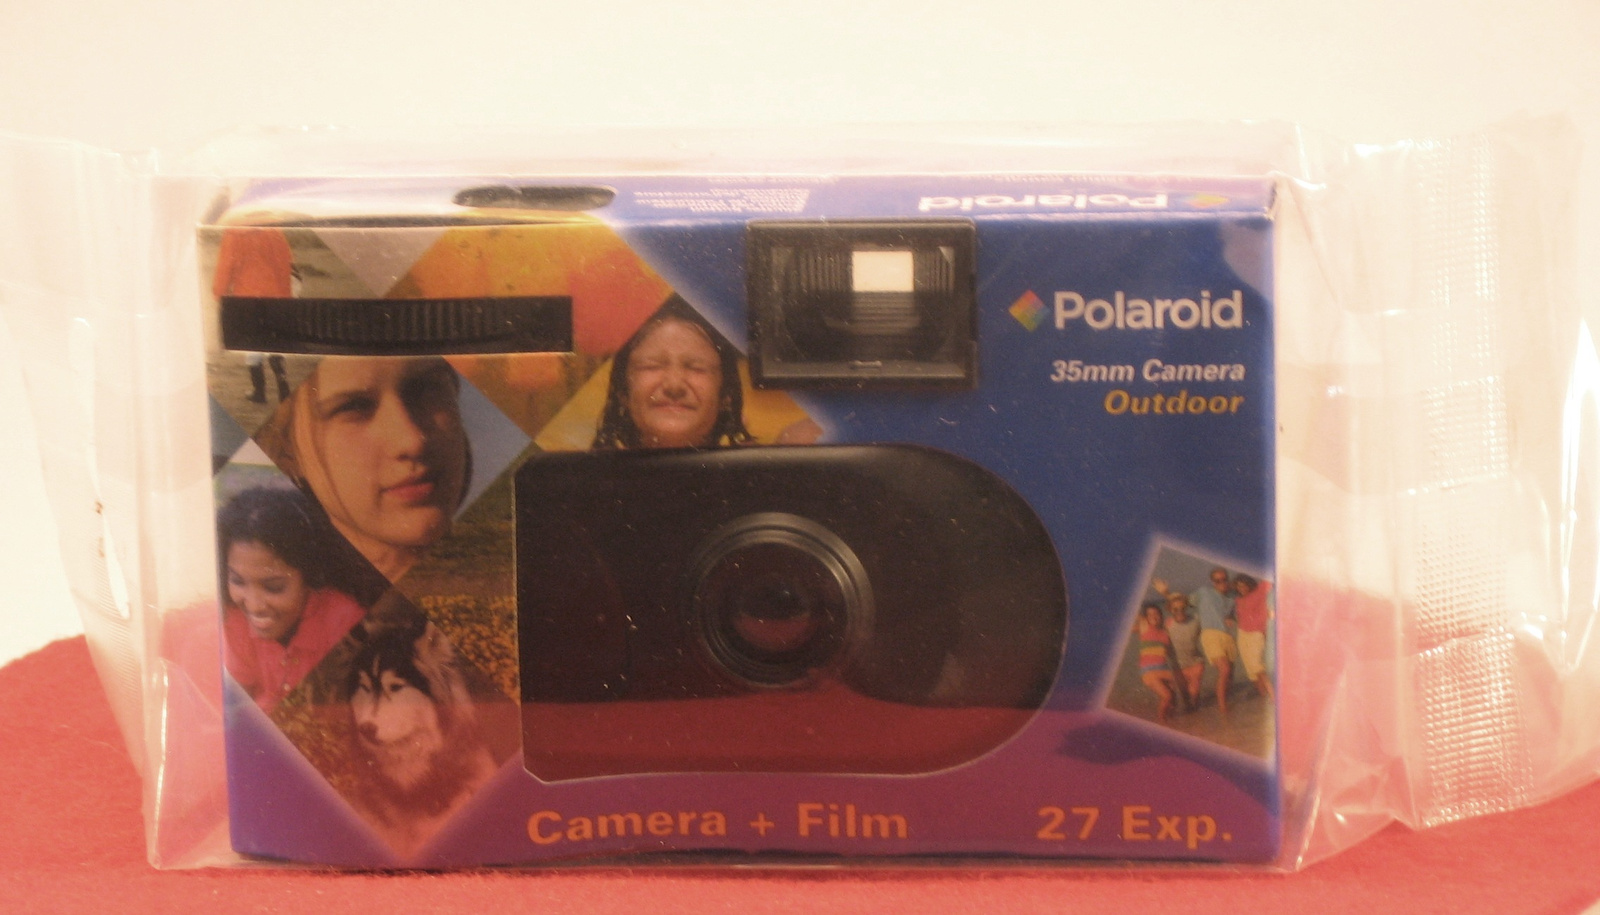 Polaroid35mm outdorr